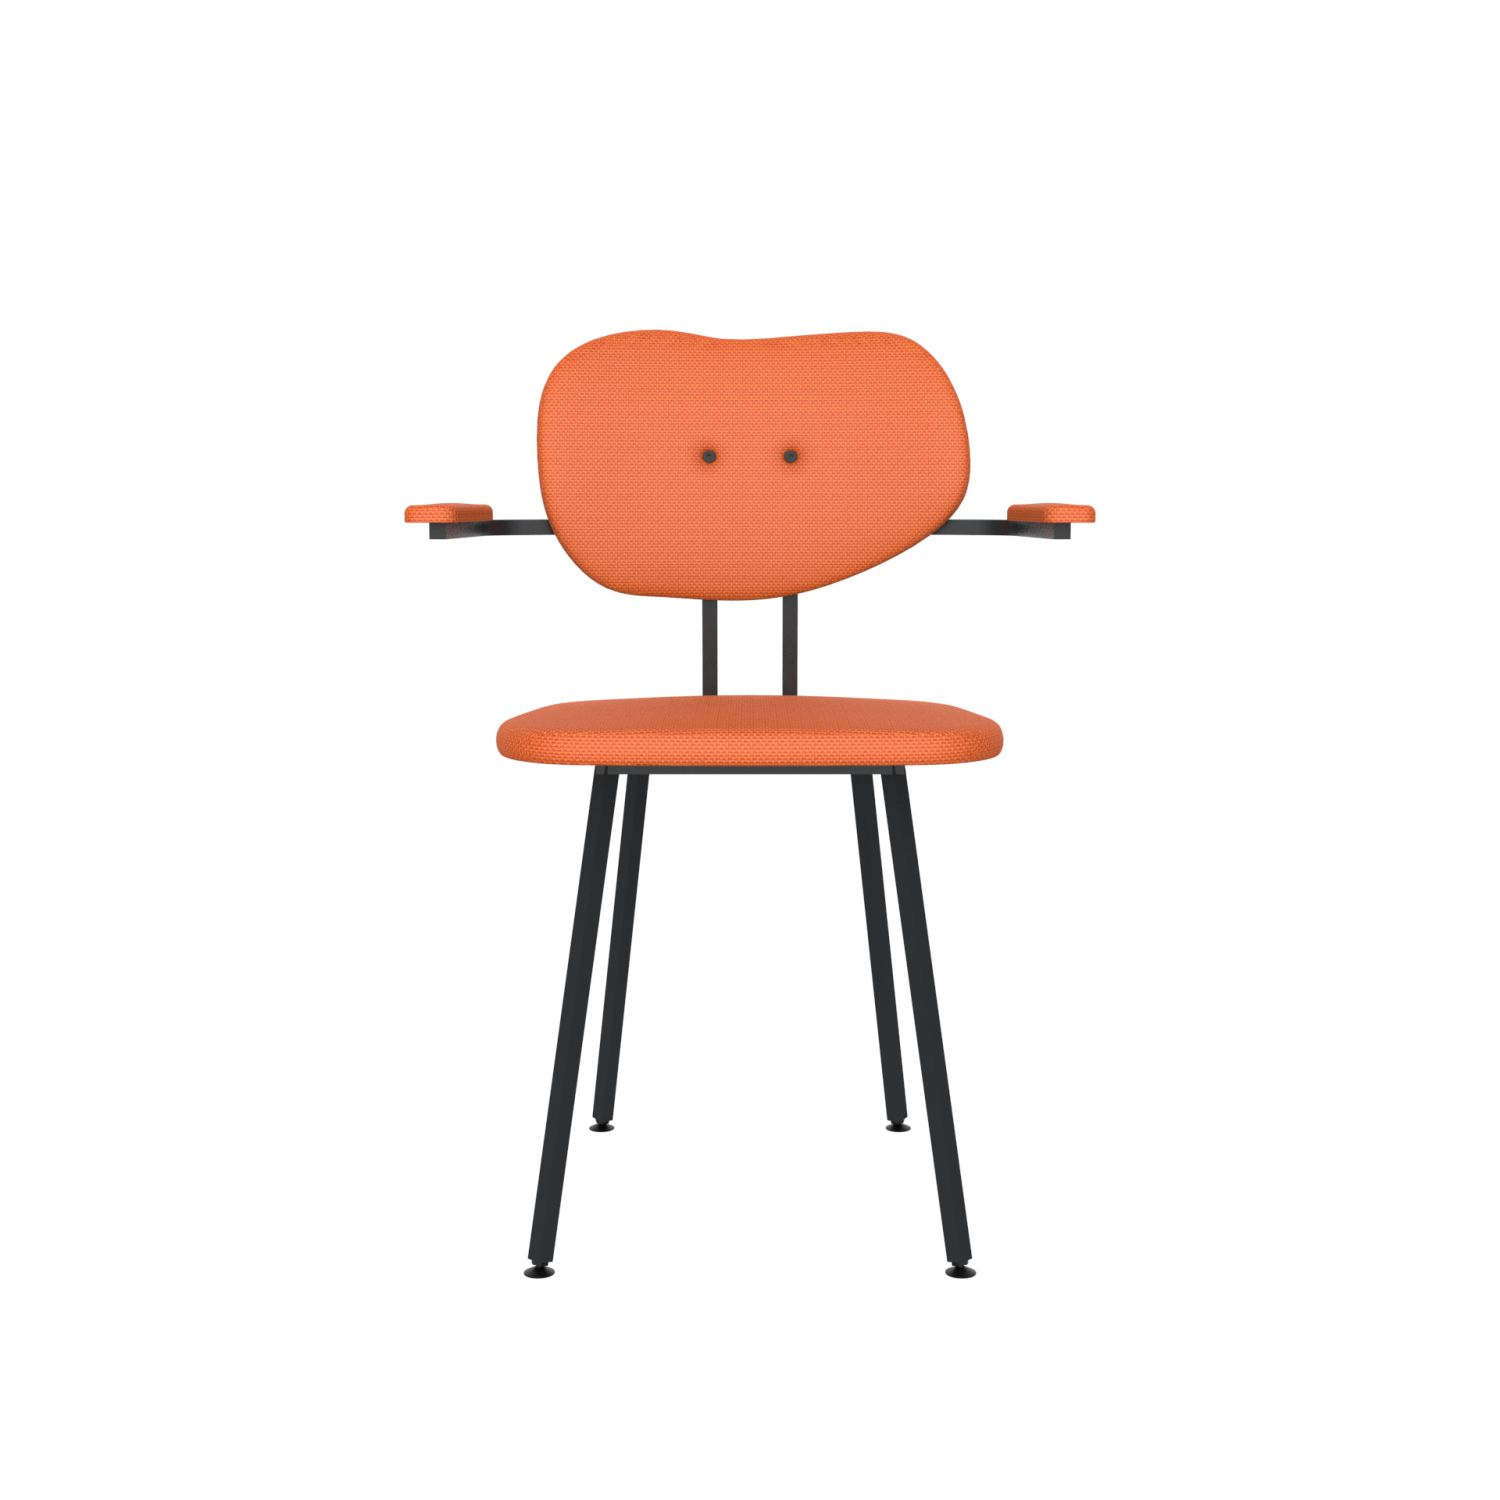 lensvelt maarten baas chair 102 not stackable with armrests backrest b burn orange 102 black ral9005 hard leg ends